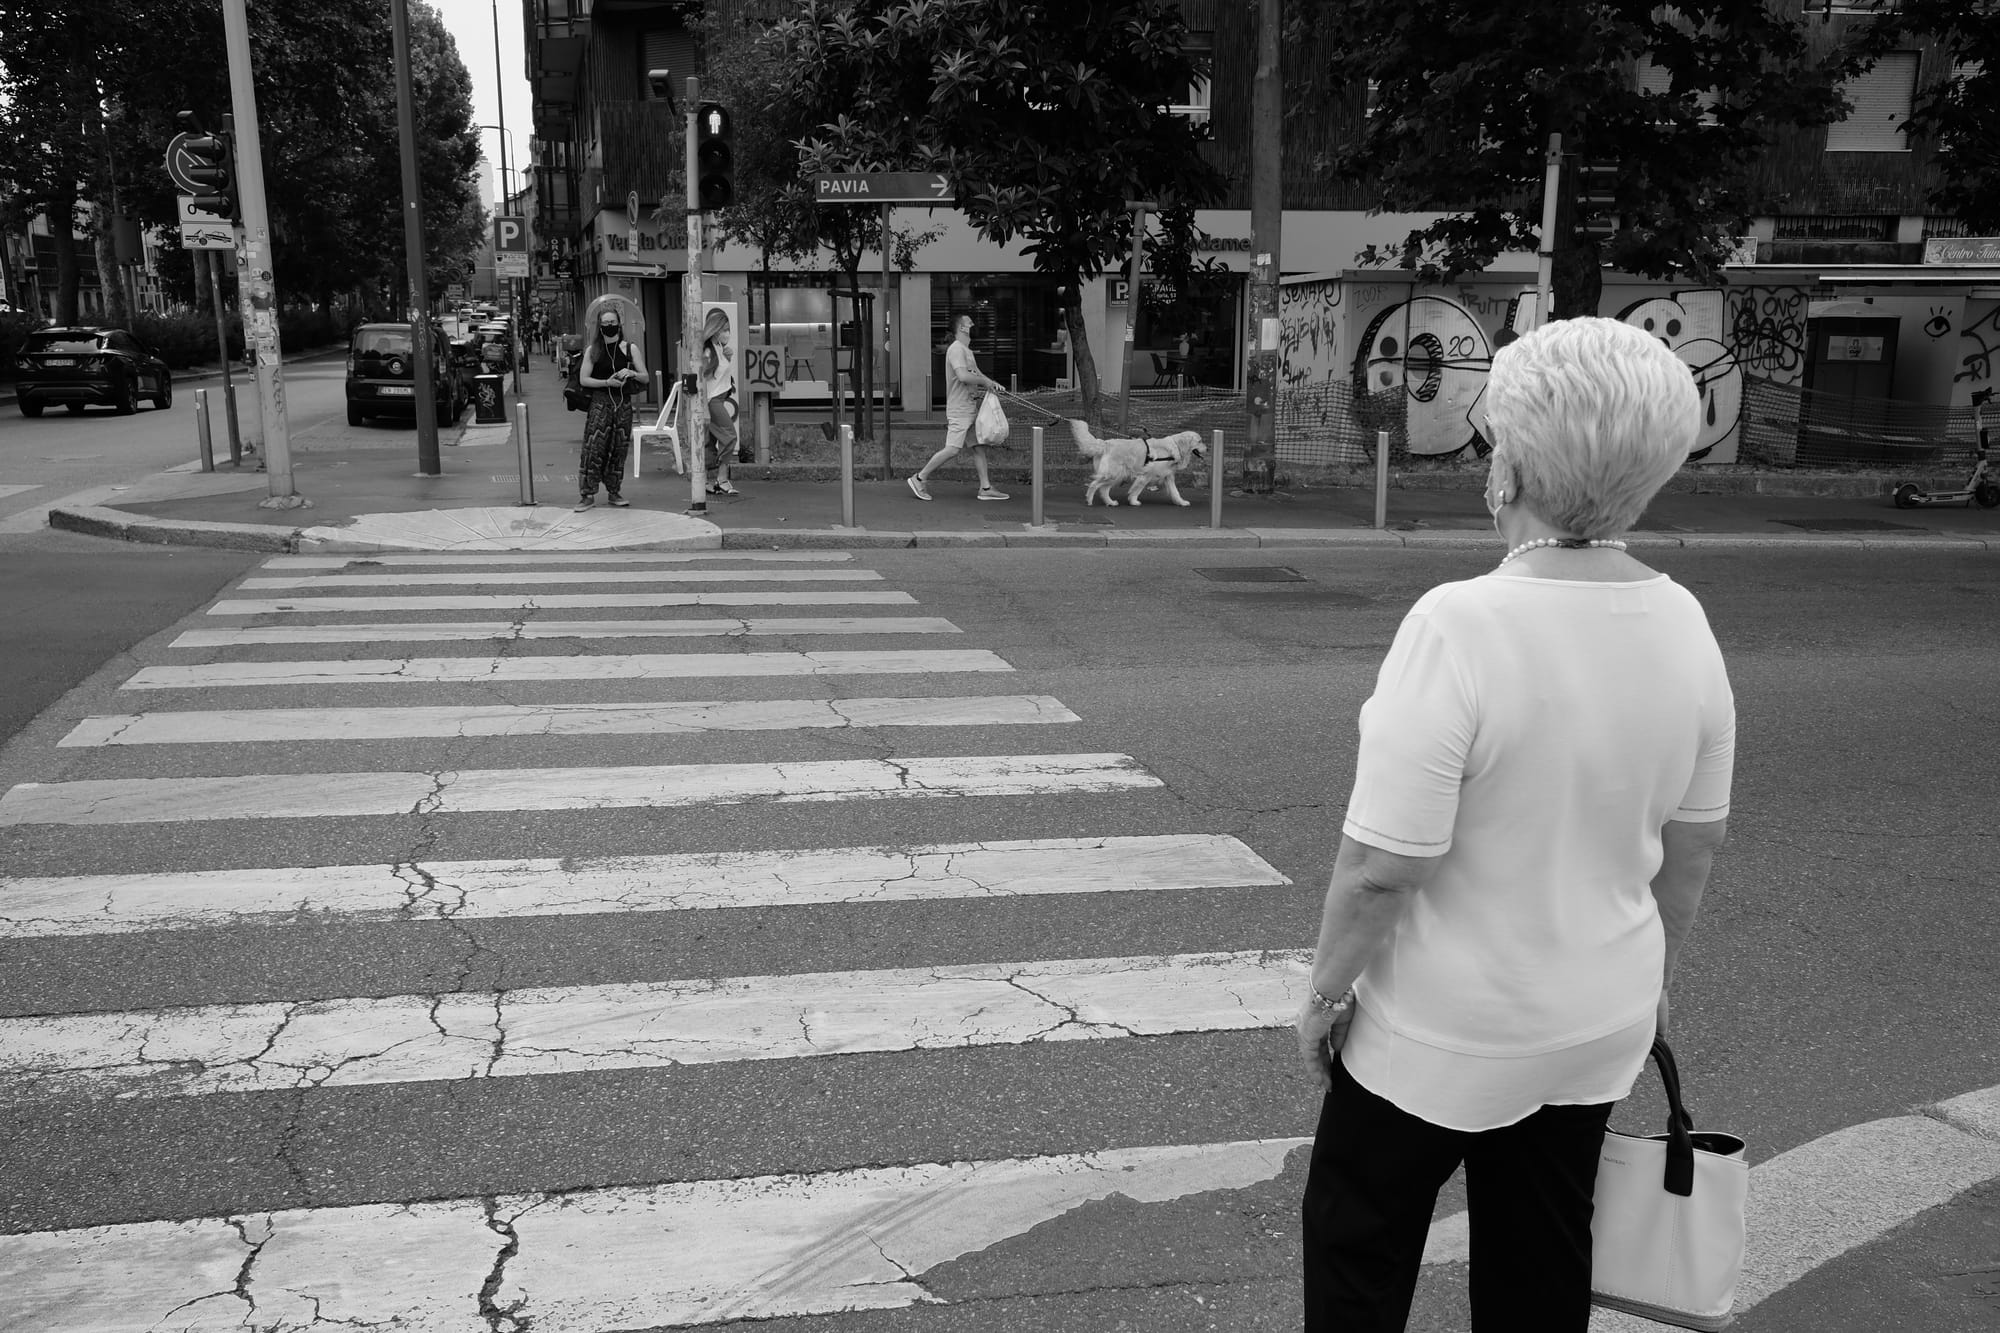 Crossroads. Gli incroci di Milano nelle fotografie di Alessandro Bocchi e Gianni Ranuio